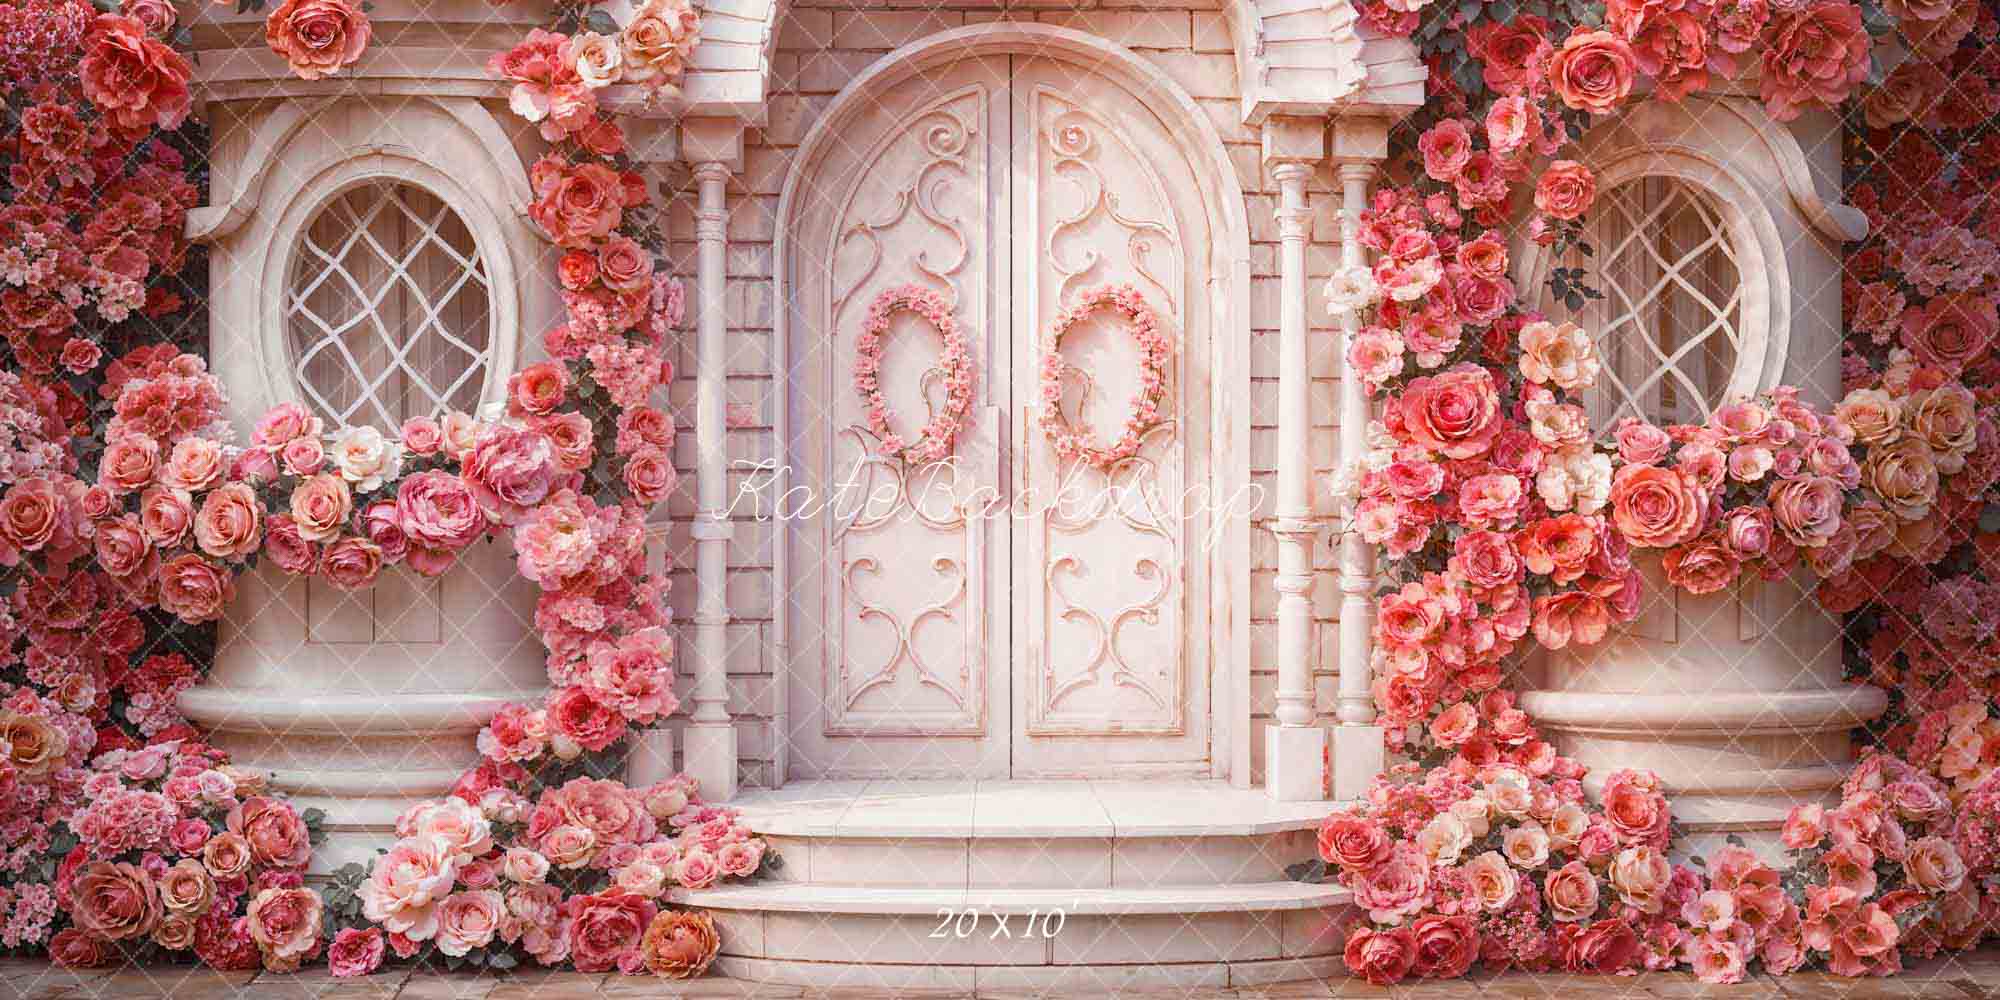 Kate Saint Valentin Printemps Rose Fleurs Maison Toile de fond conçue par Emetselch